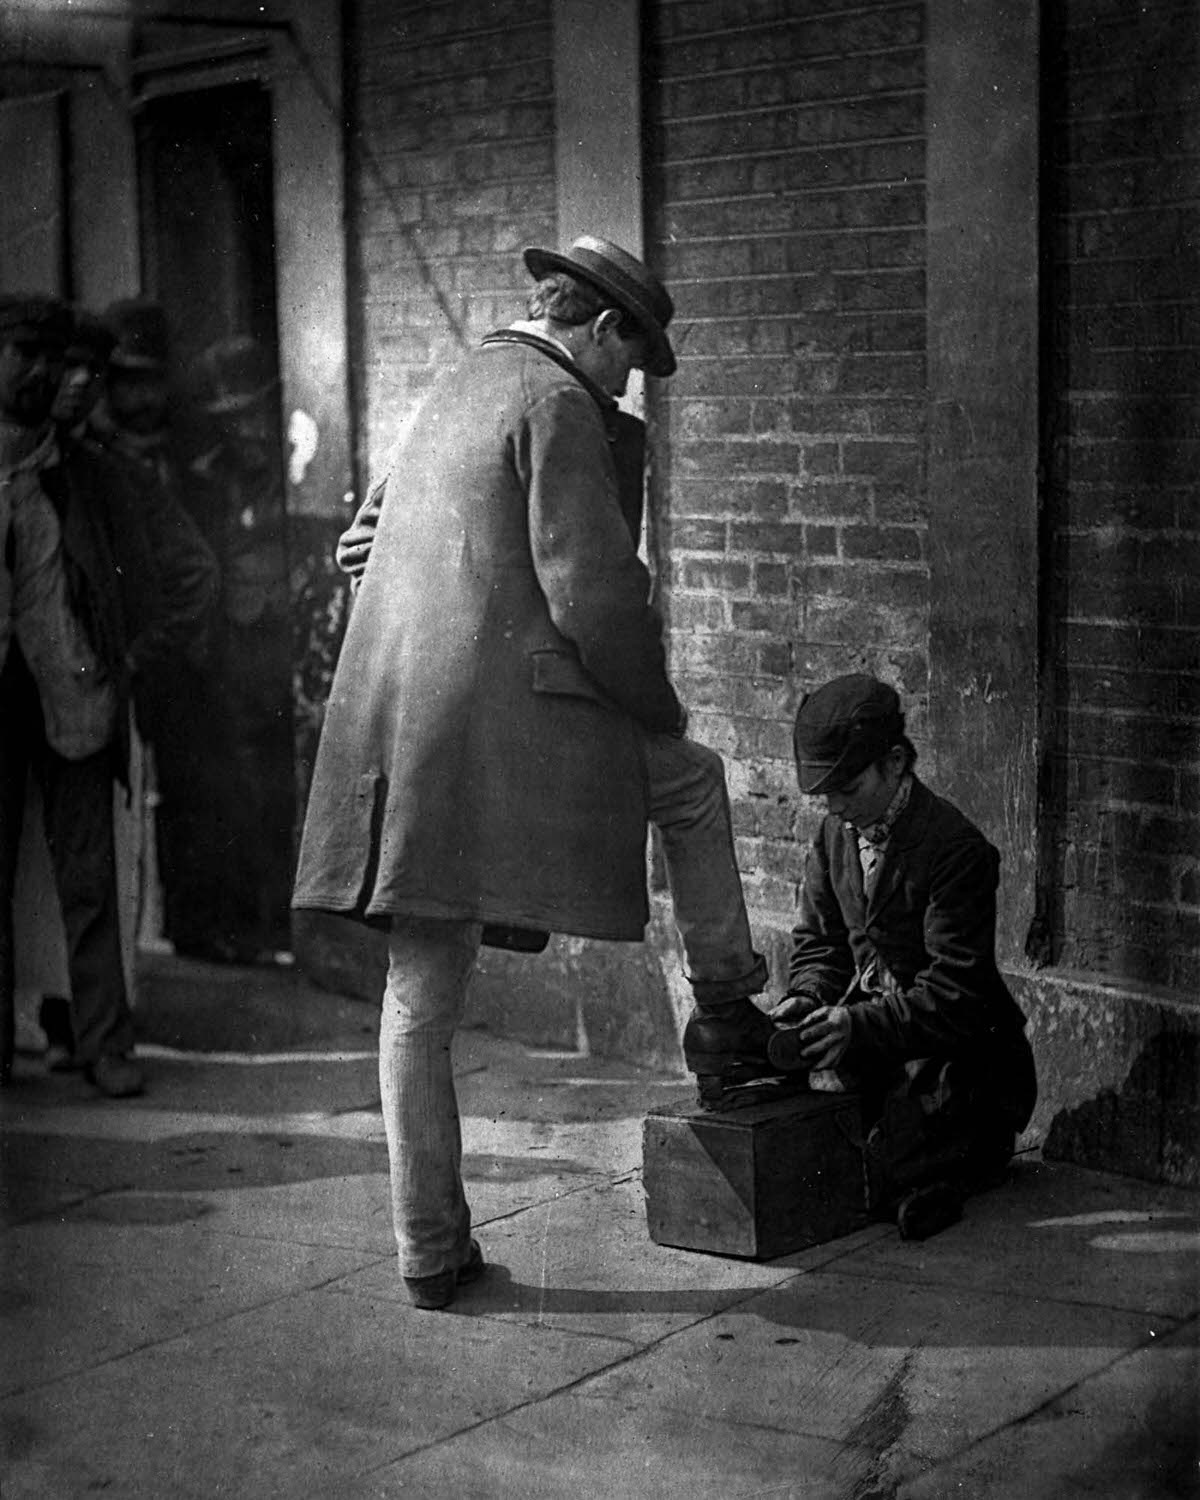 A shoeshine boy at work, 1877.